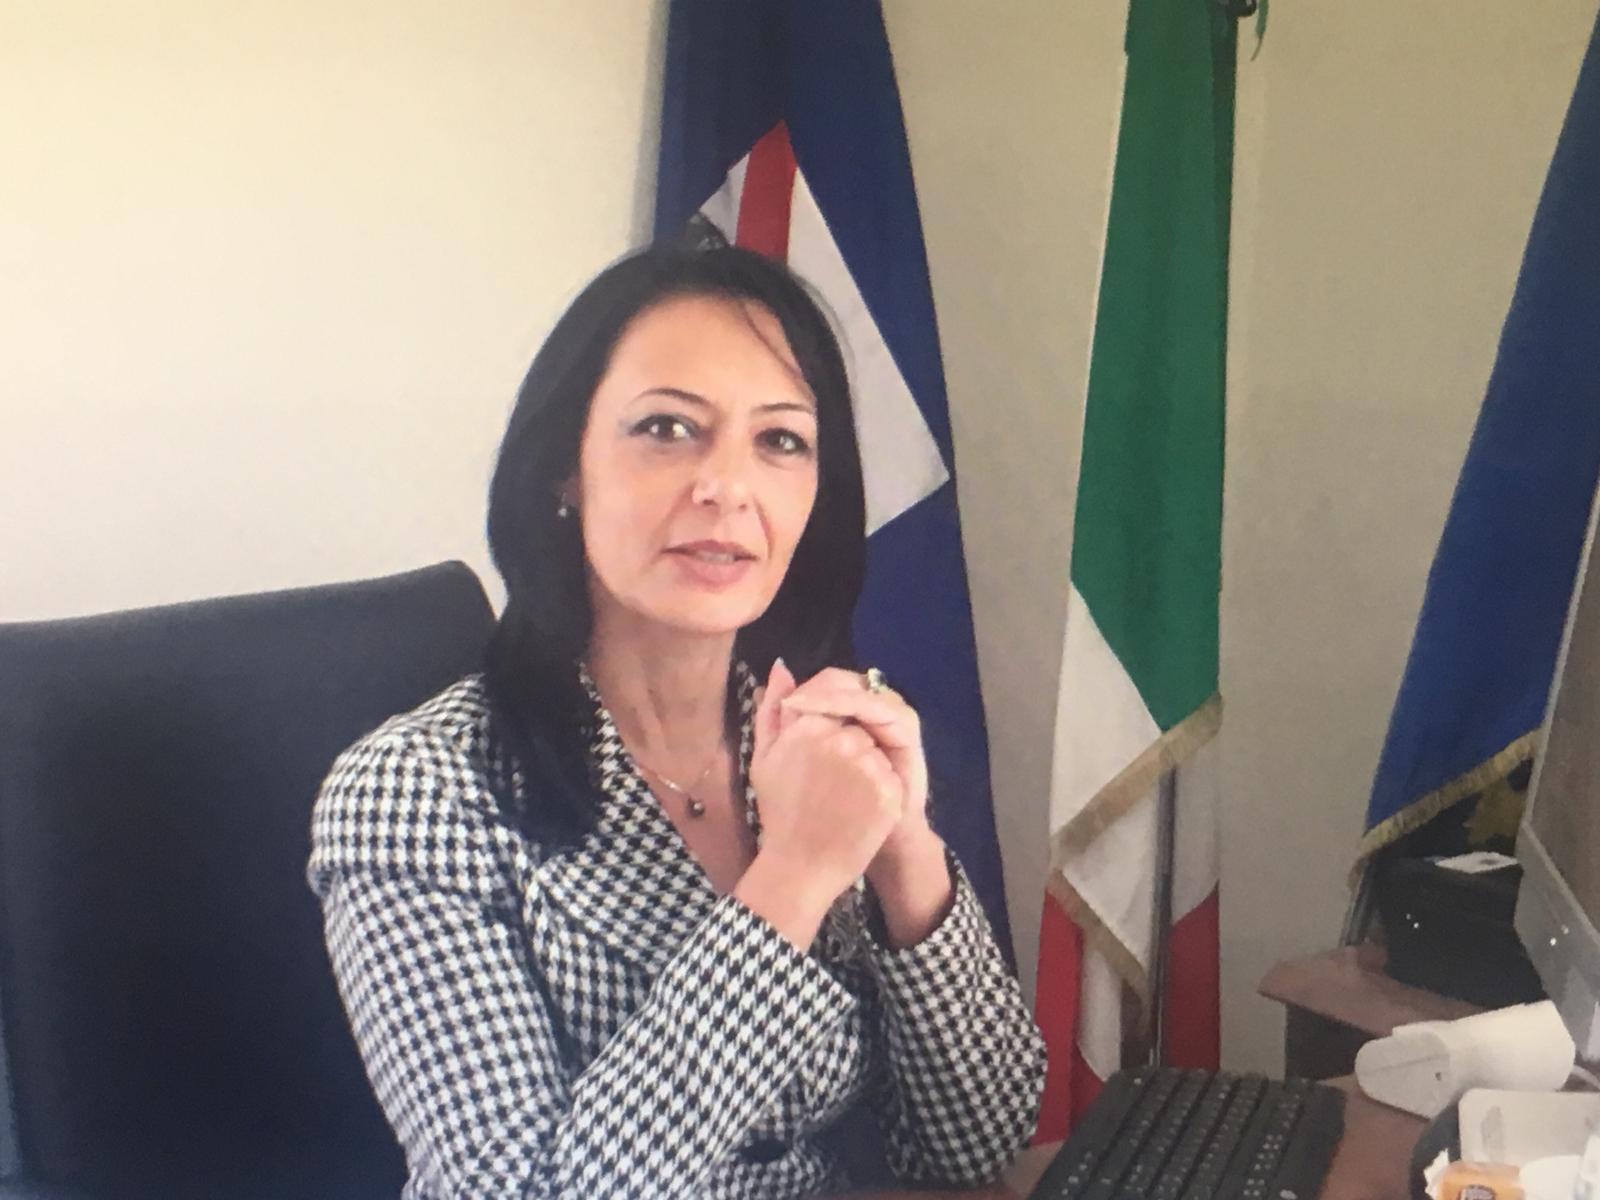 Lavoro, Palmeri: “Grande orgoglio per la regione Campania per i successi di selfiemplyment”